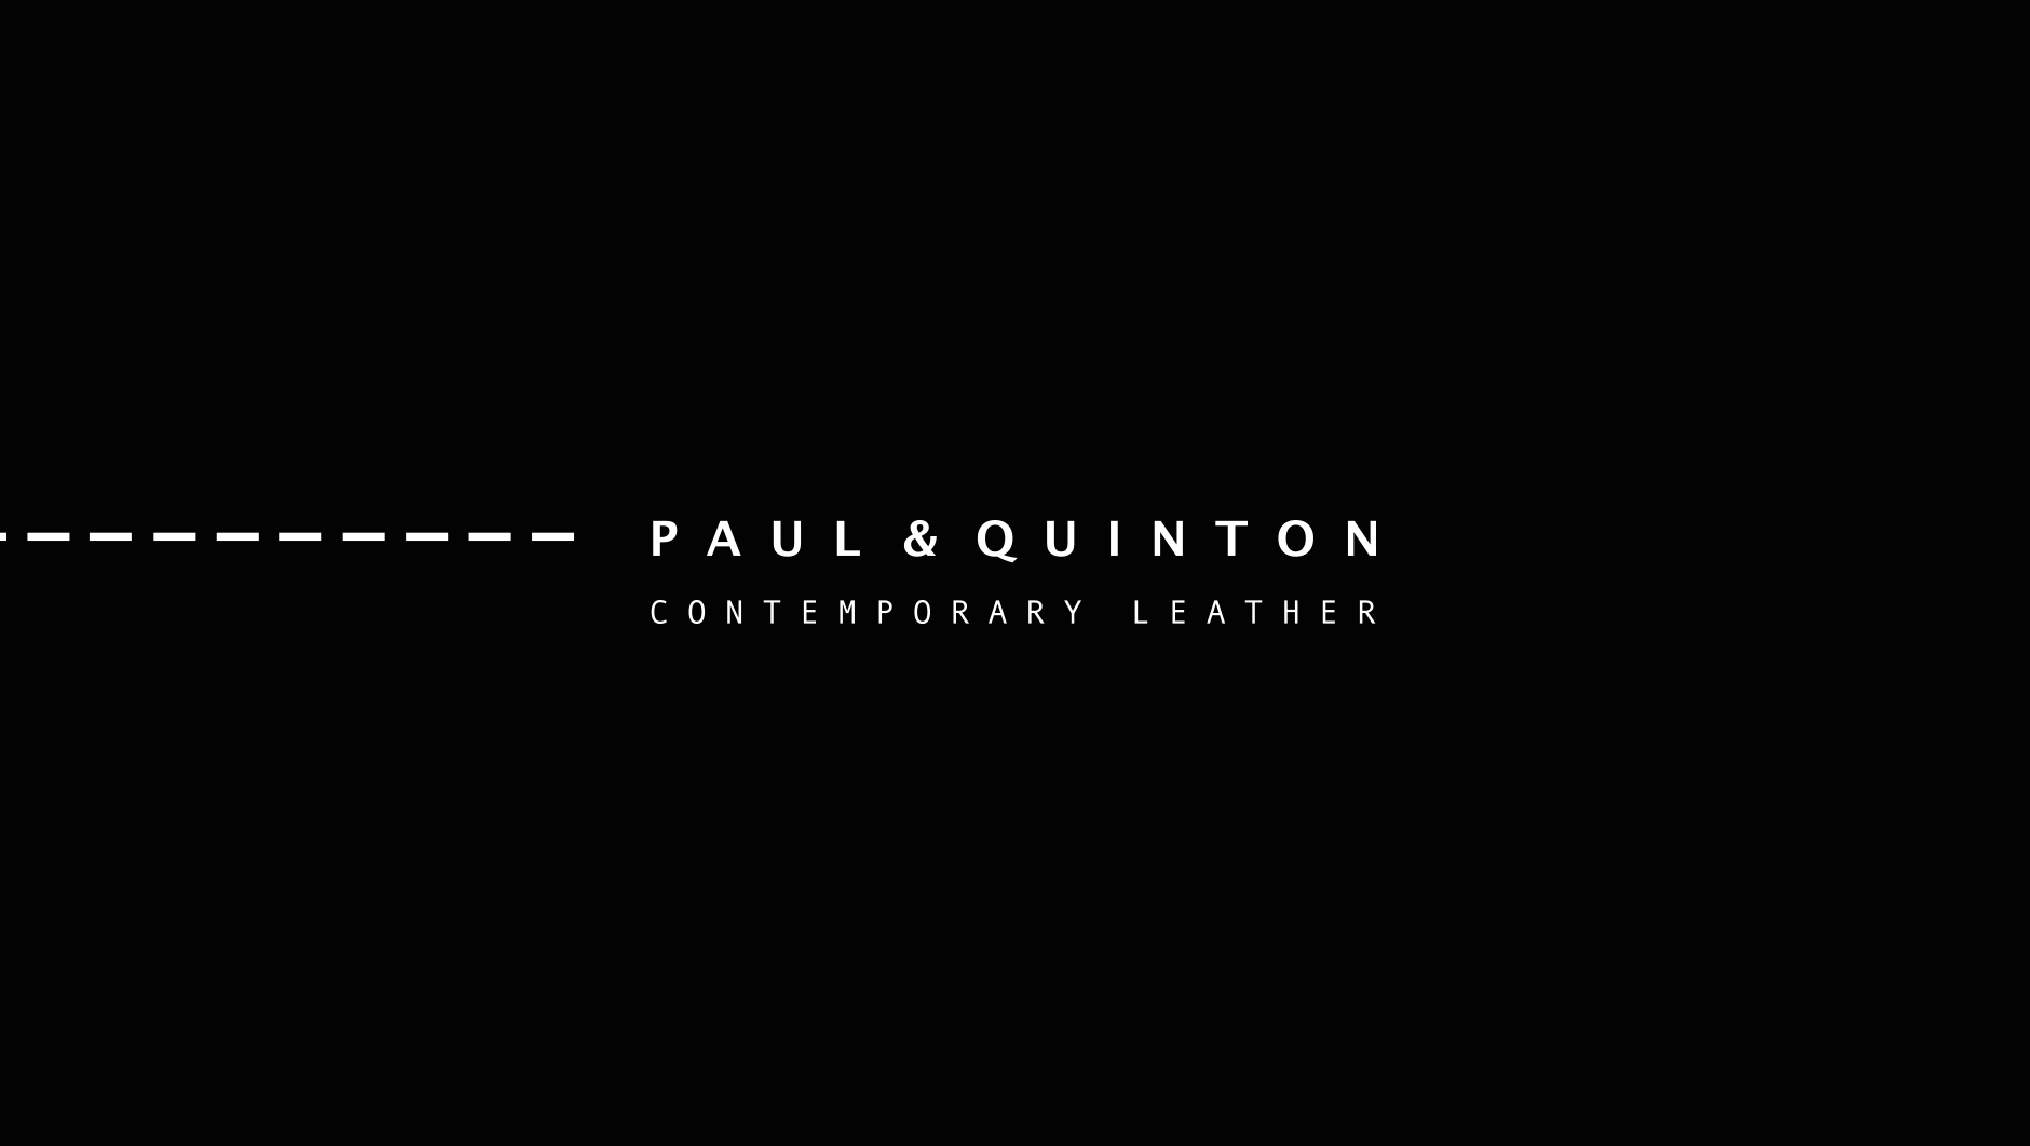 Paul & Quinton